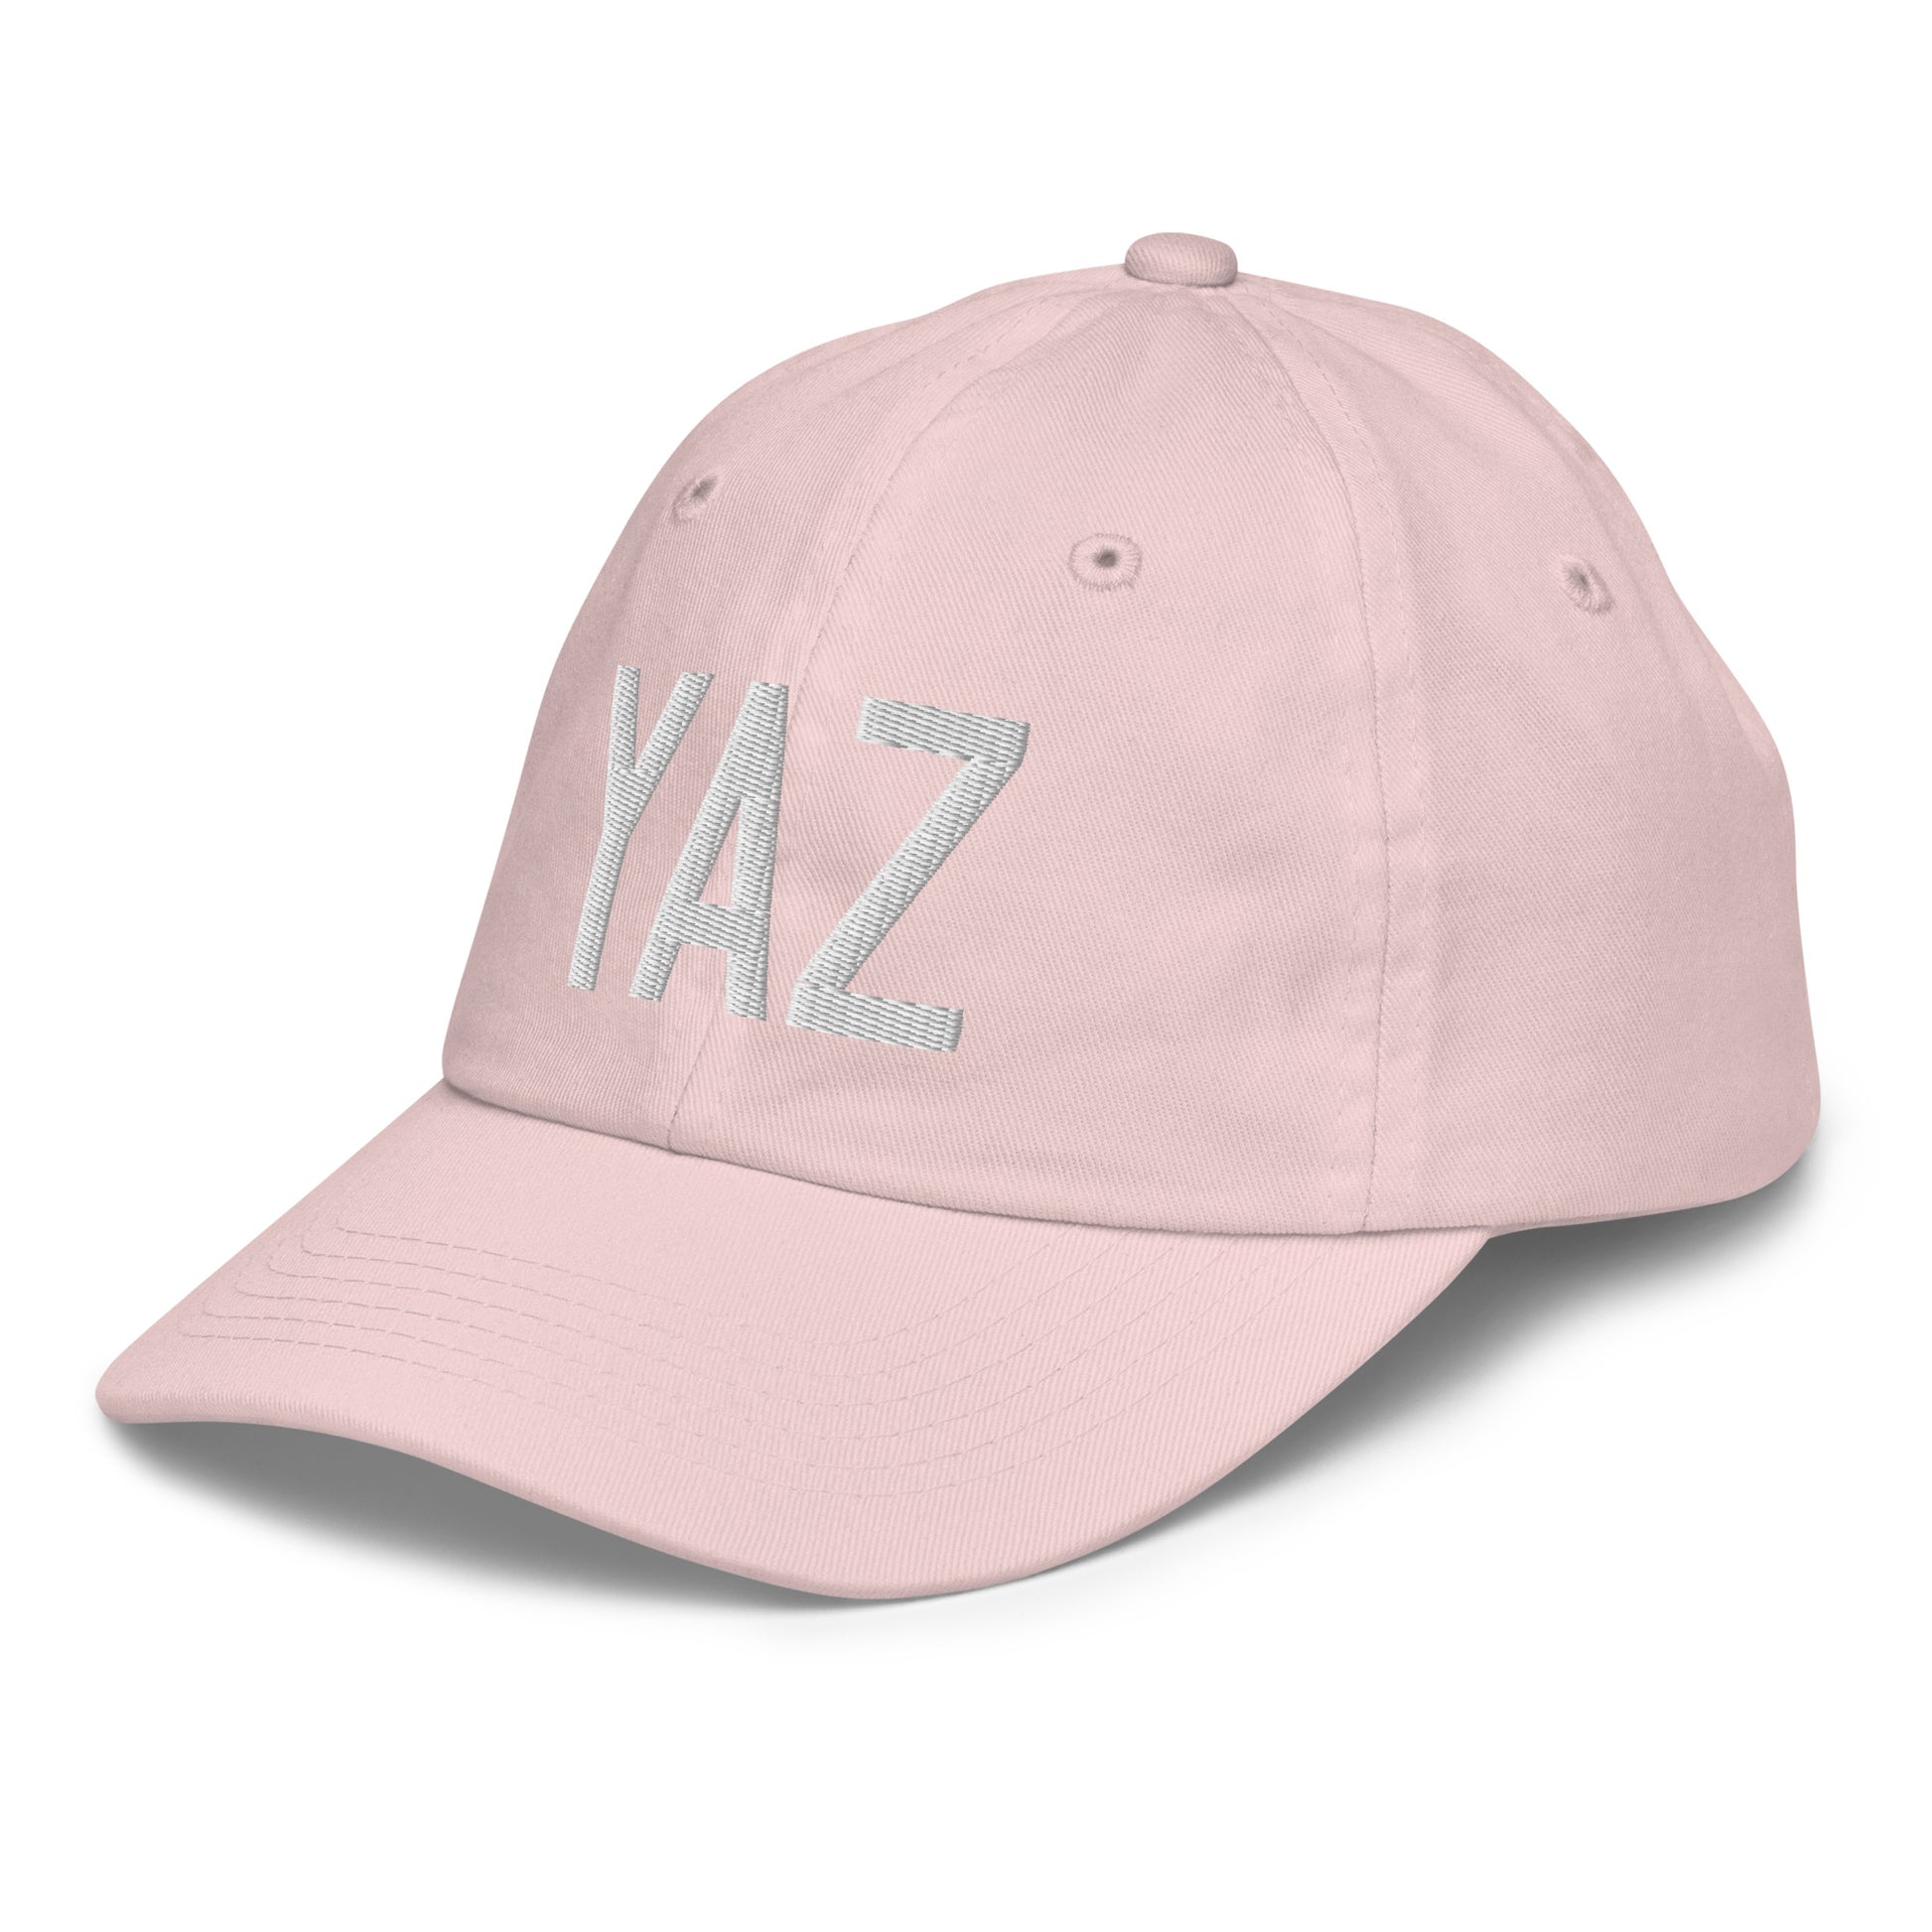 Airport Code Kid's Baseball Cap - White • YAZ Tofino • YHM Designs - Image 33